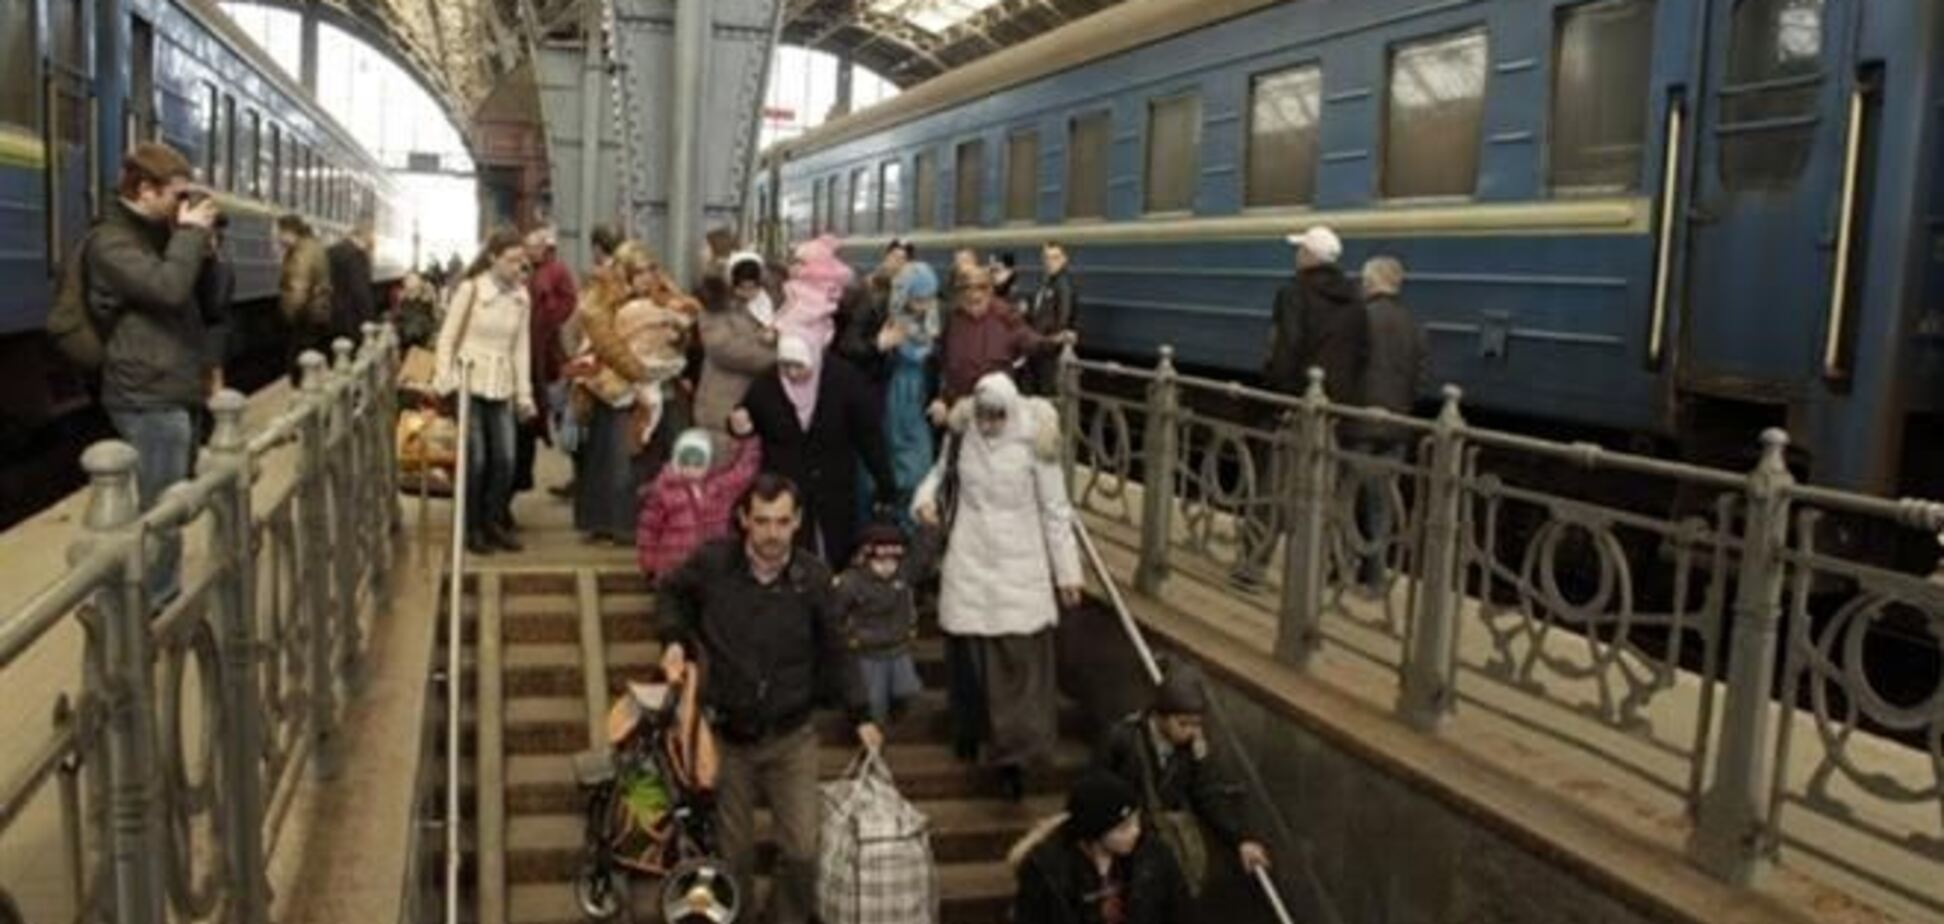 Более 30-ти крымских татар попросили убежища в Польше